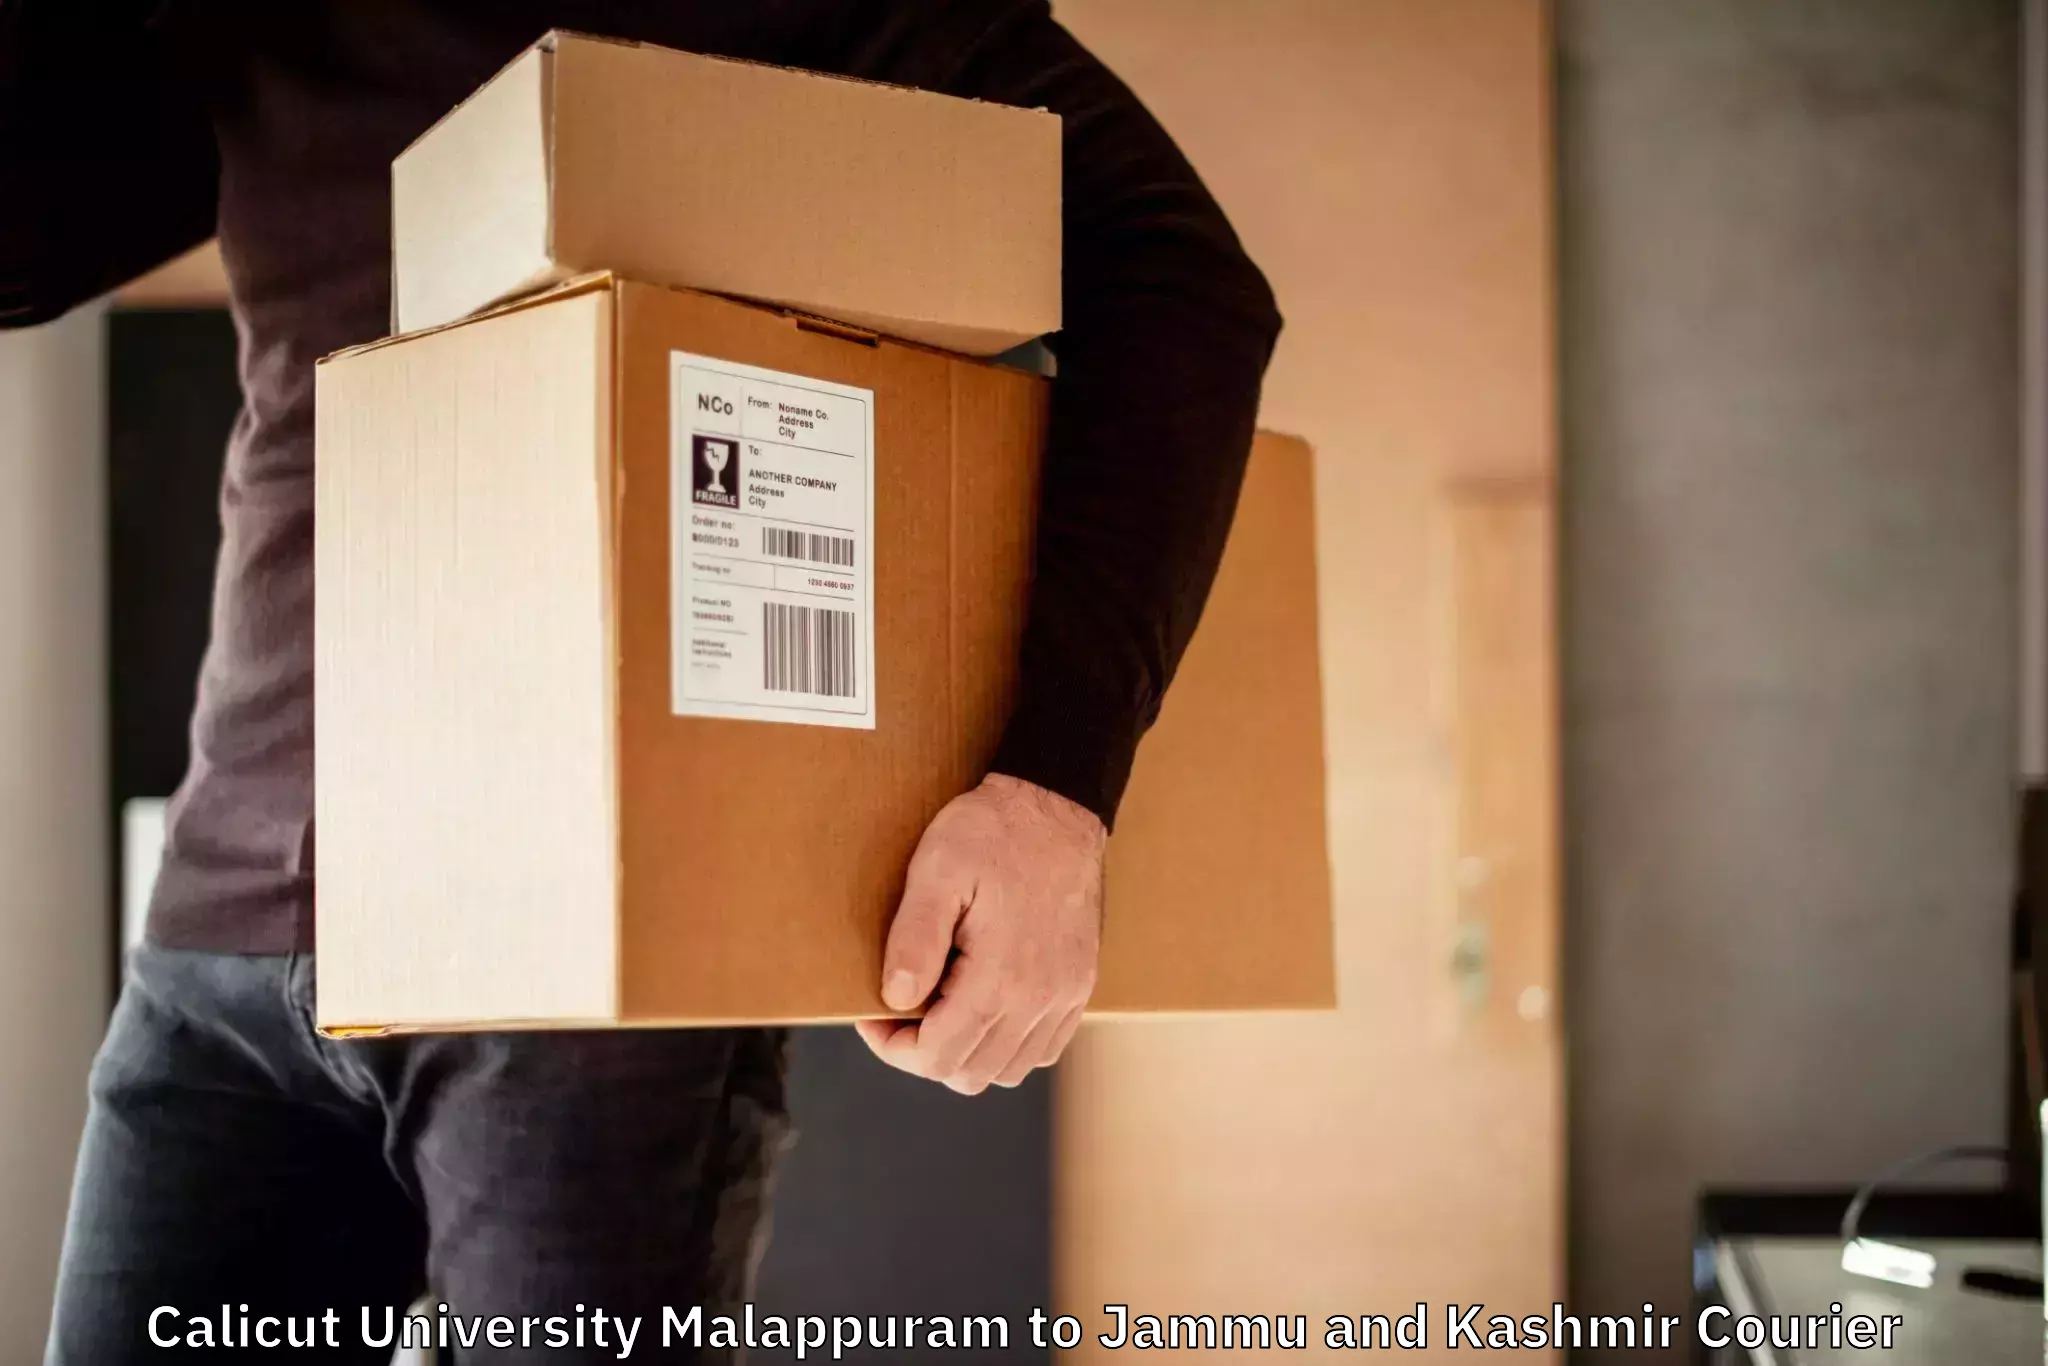 Discounted shipping Calicut University Malappuram to University of Jammu